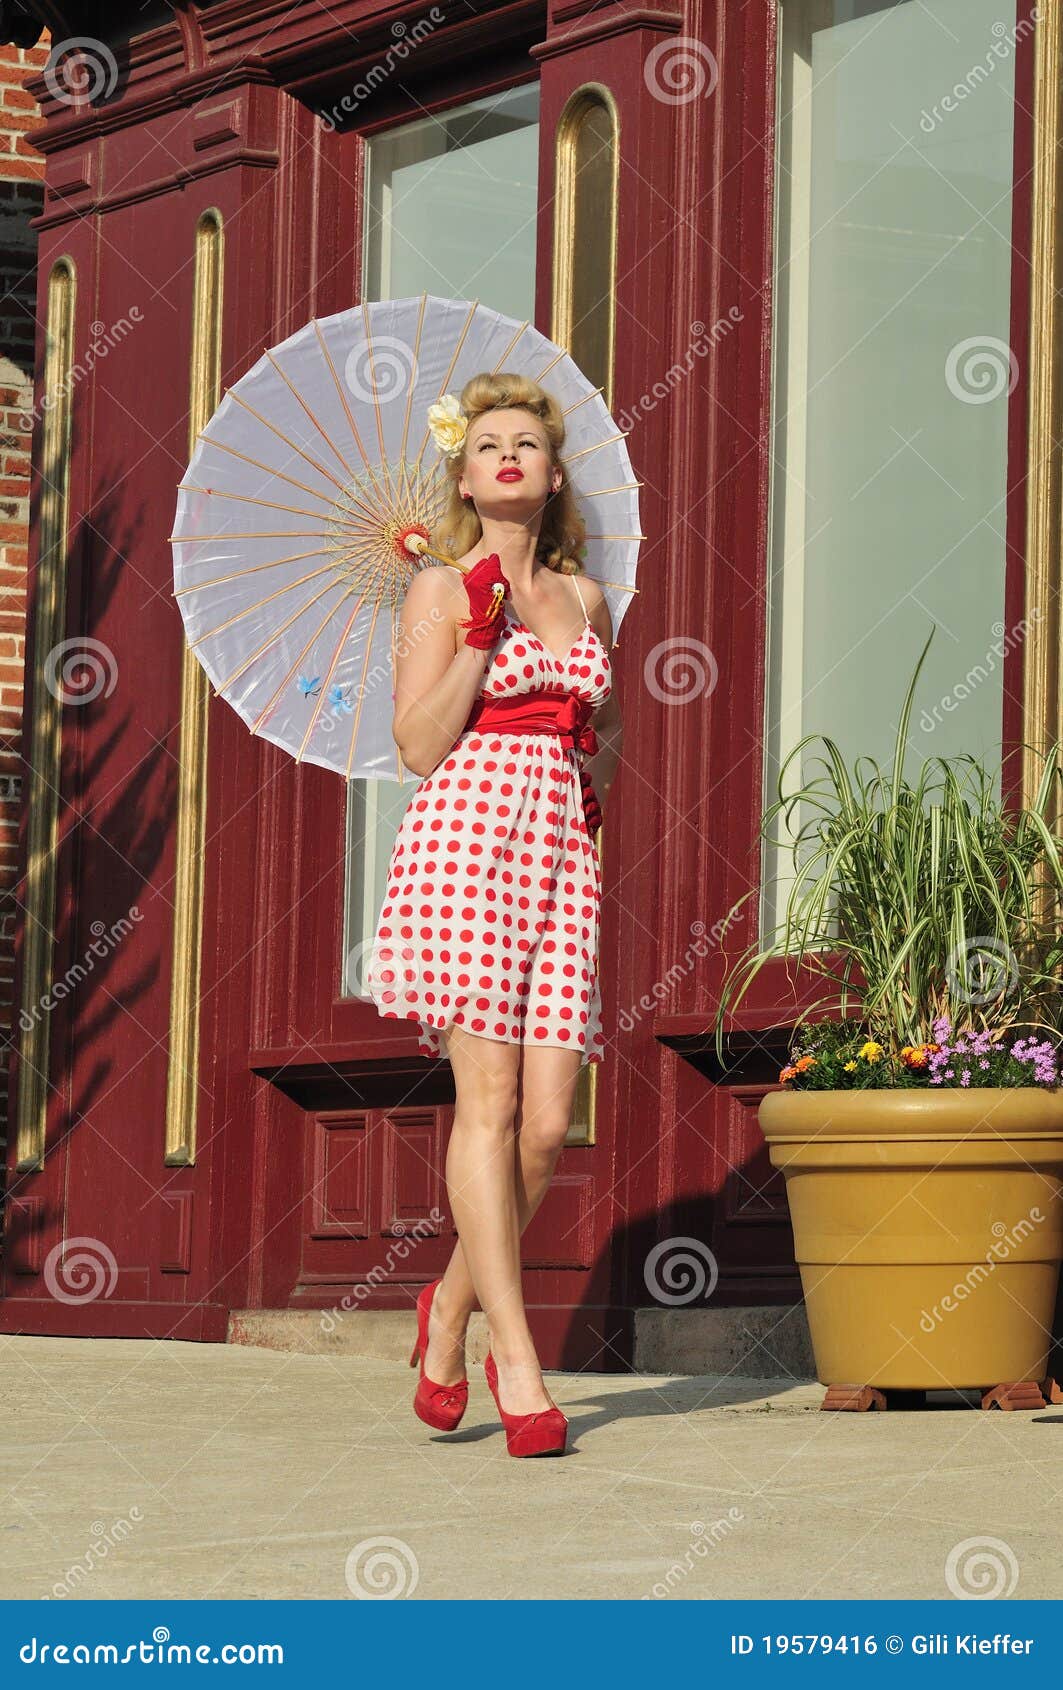 1940s lady with umbrella